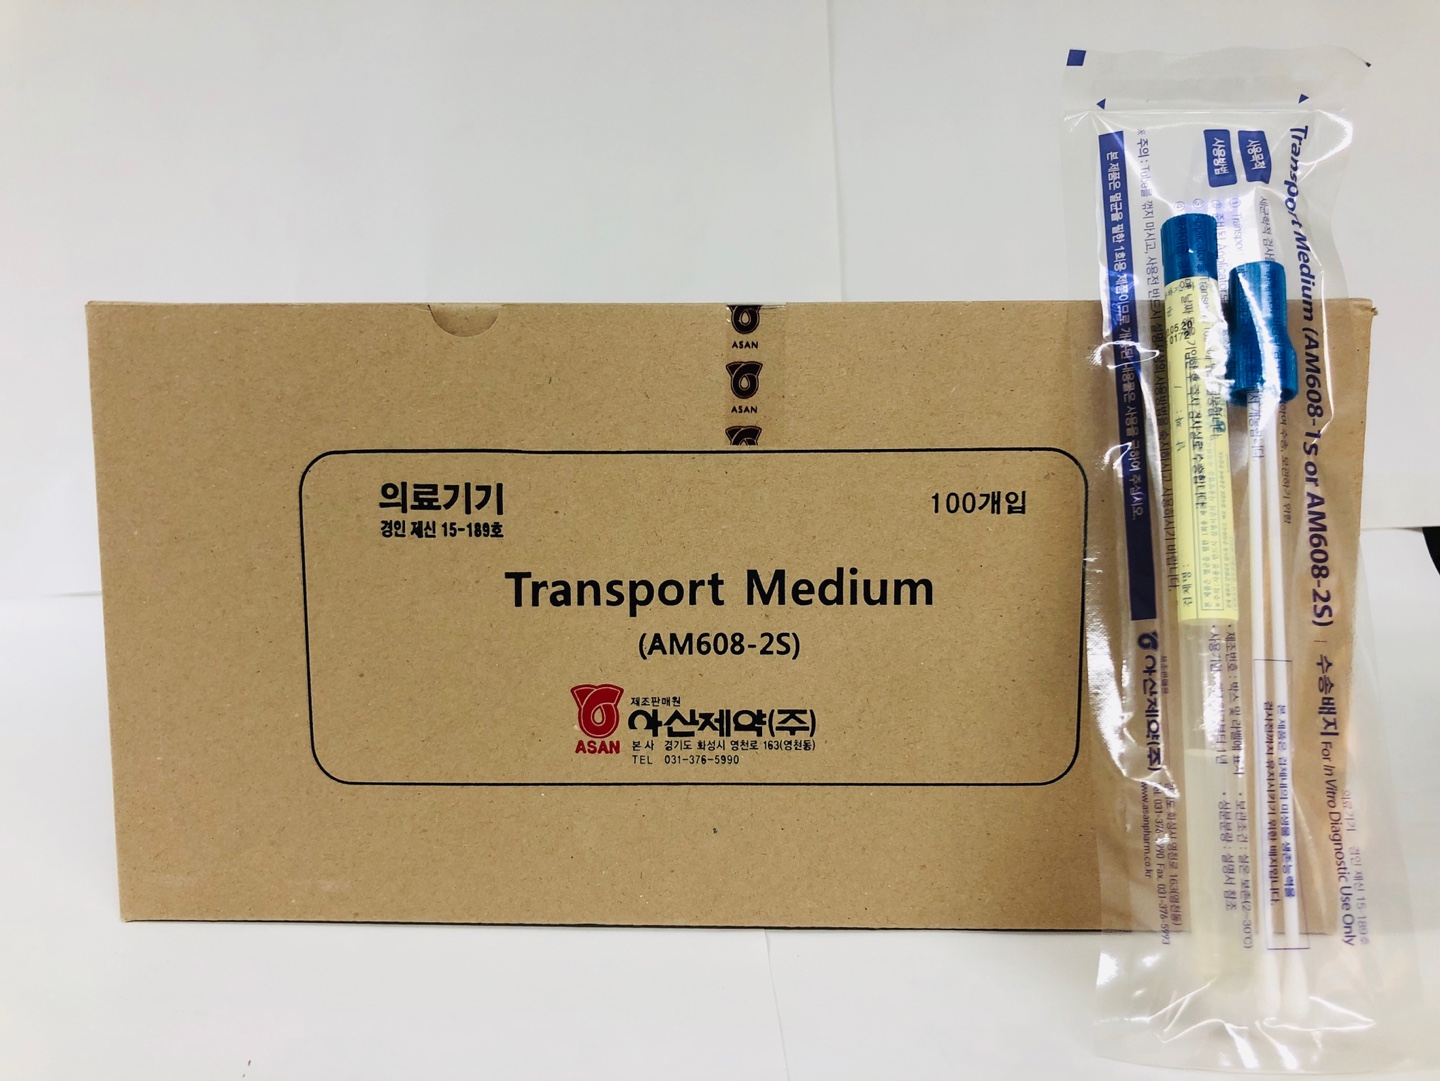 Transport Medium / Transport Media